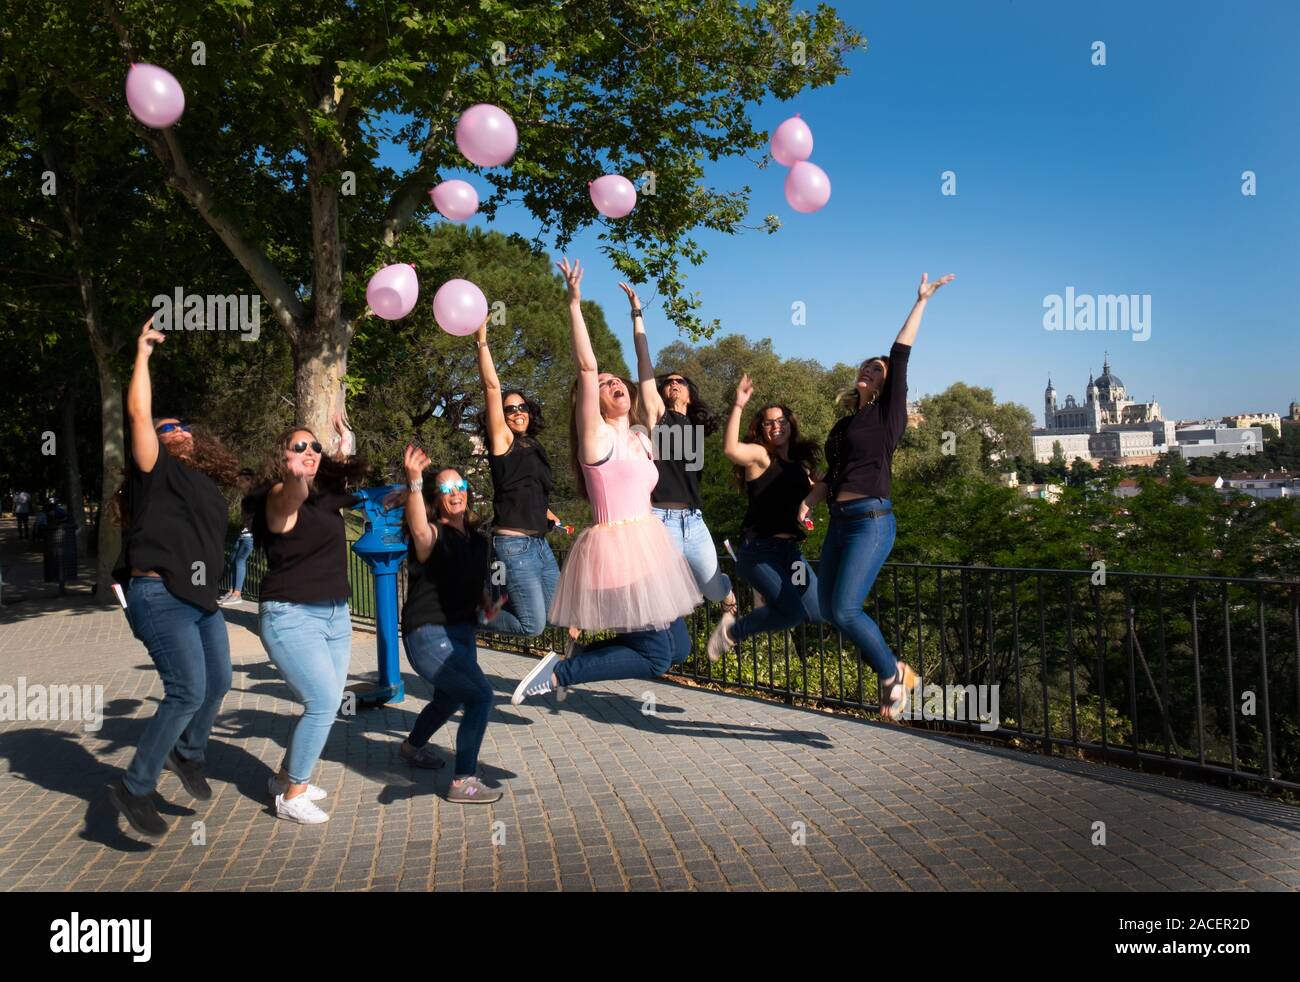 Un groupe de huit filles prendre des images amusantes Banque D'Images